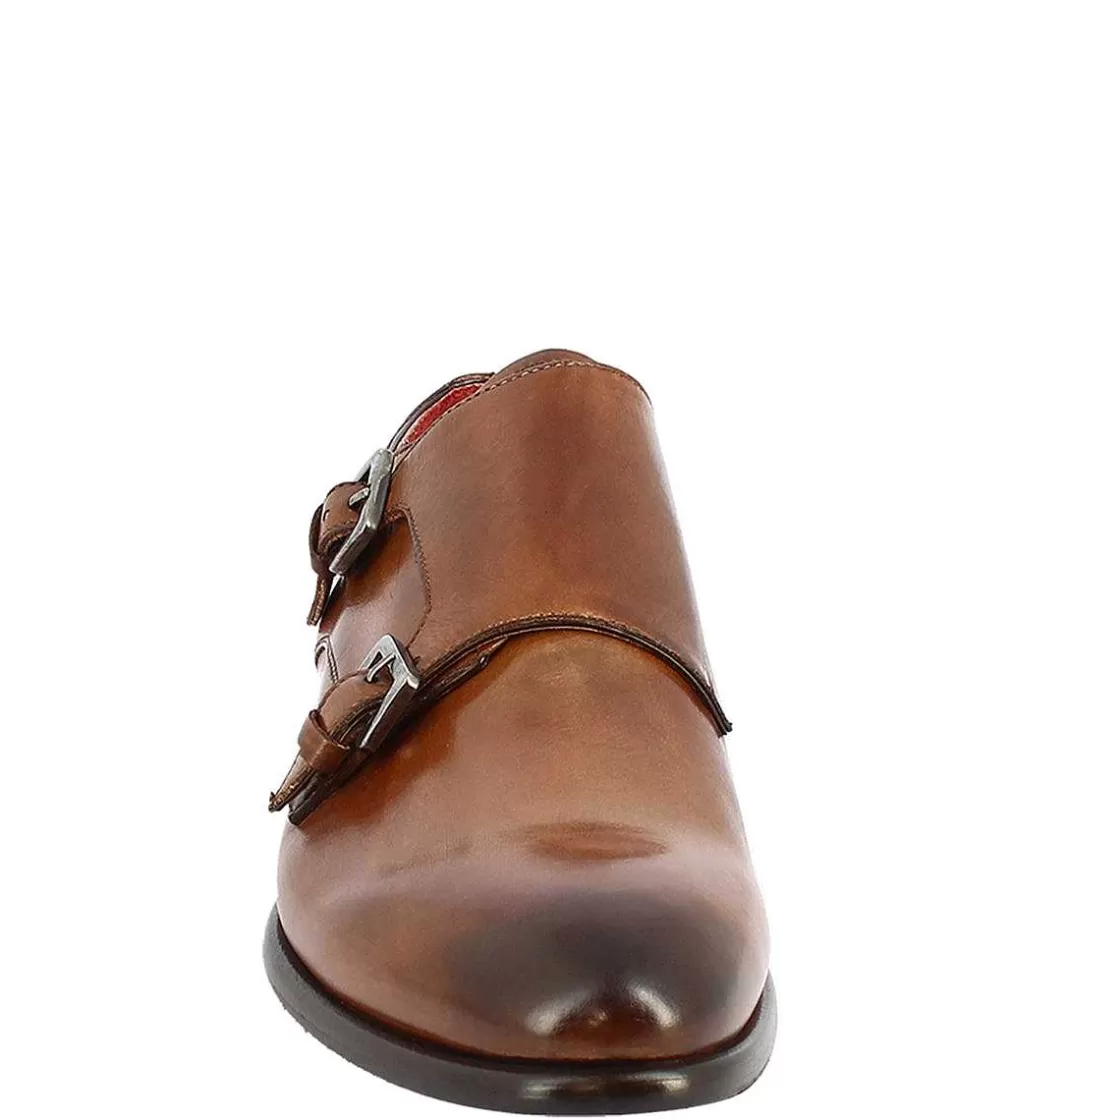 Leonardo Men'S Double Buckle Shoes In Brandy Leather Handmade Sale